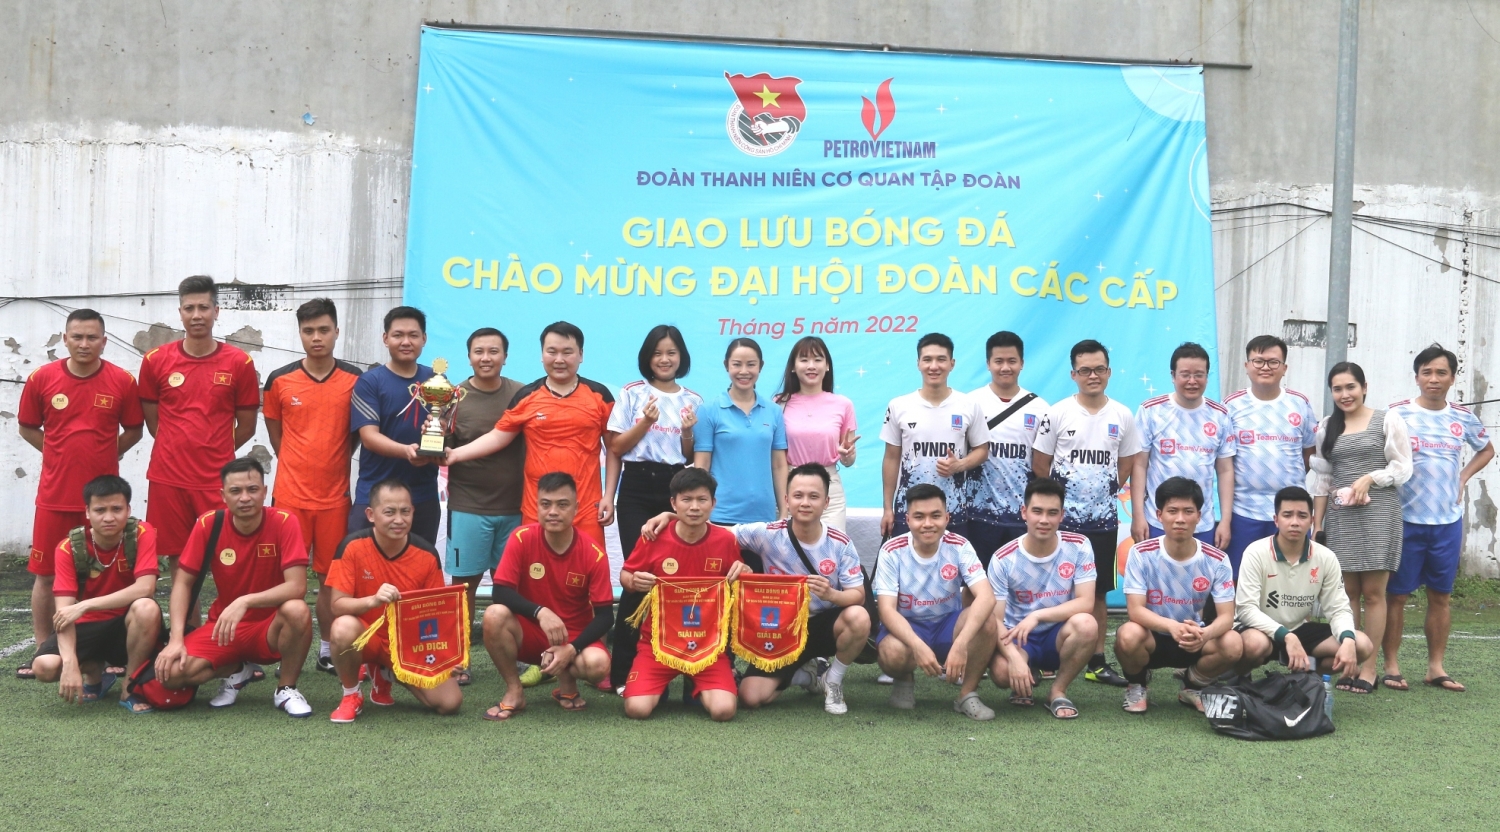 Đoàn Thanh niên Cơ quan Tập đoàn bế mạc giải bóng đá chào mừng Đại hội Đoàn các cấp